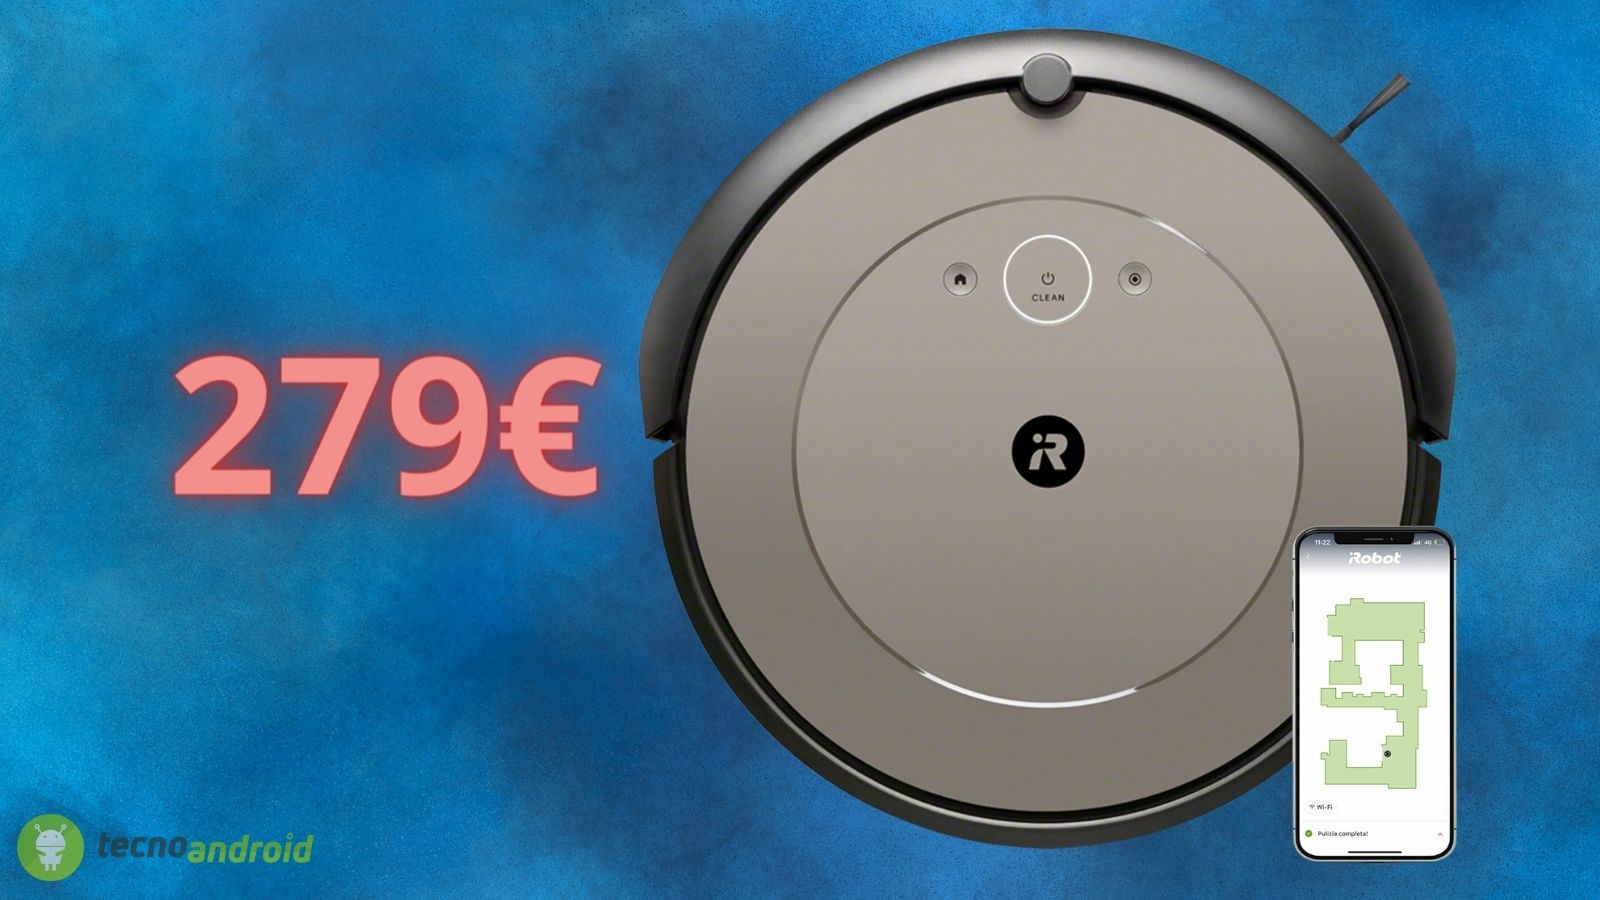 iRobot Roomba, robot aspirapolvere scontato di oltre 100 euro solo oggi